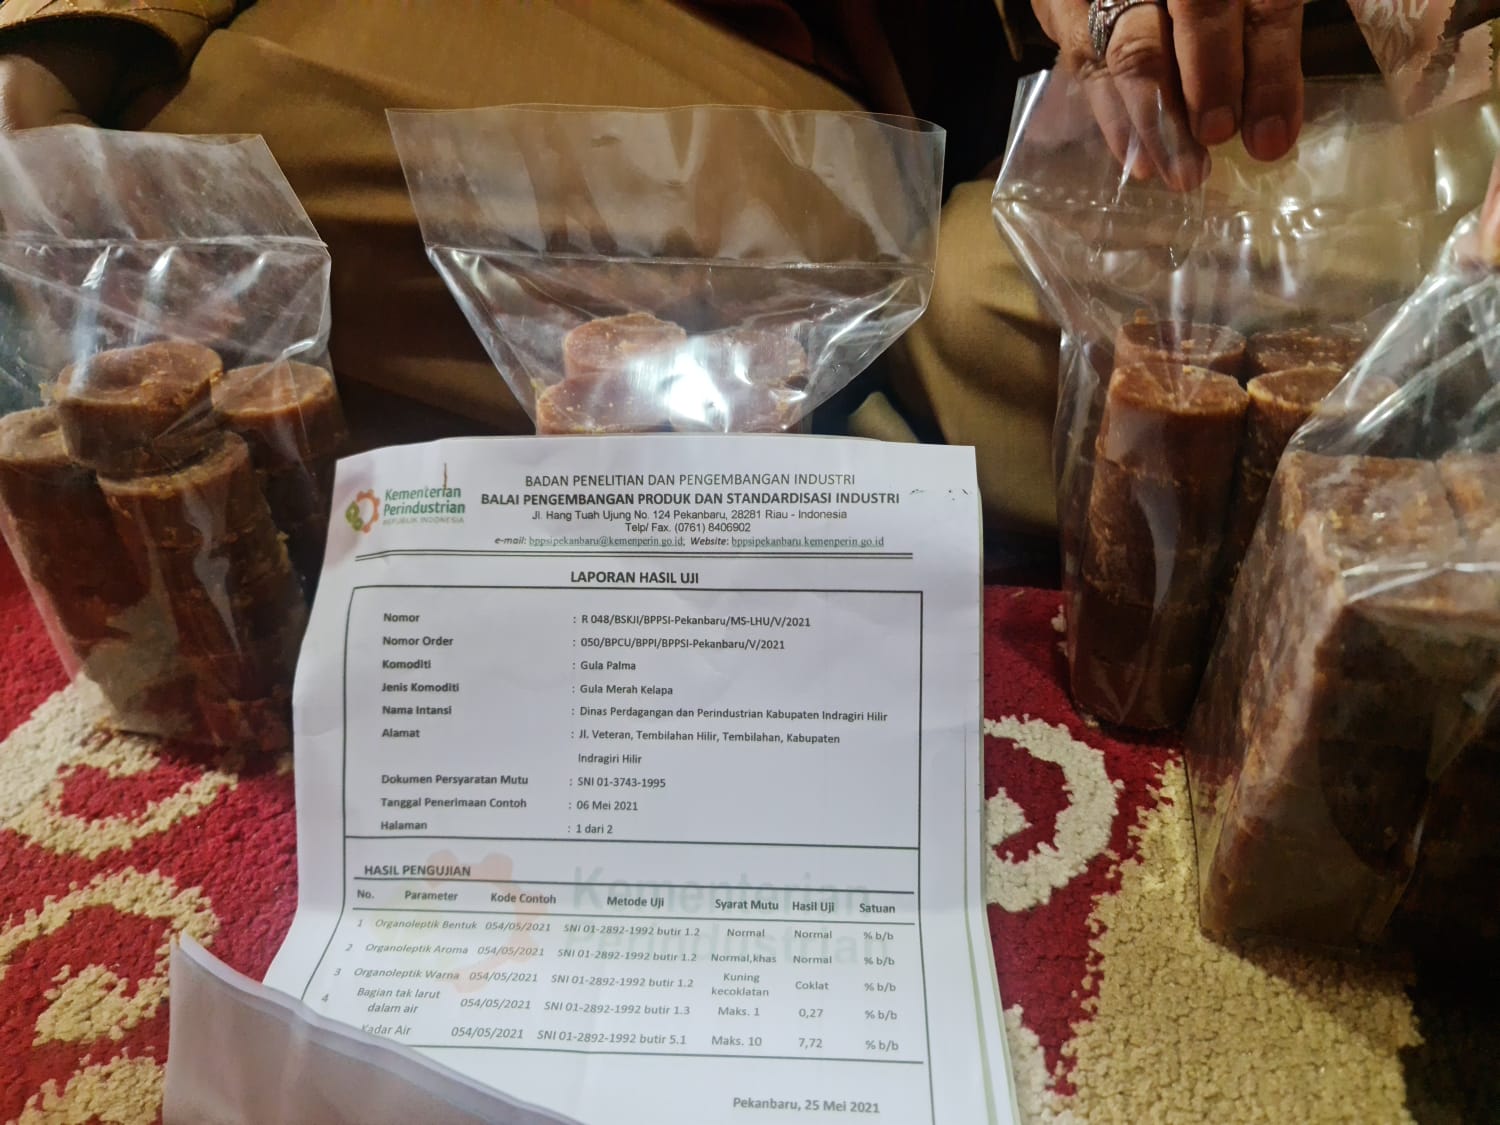 Pembuatan Gula Merah Sari Nira